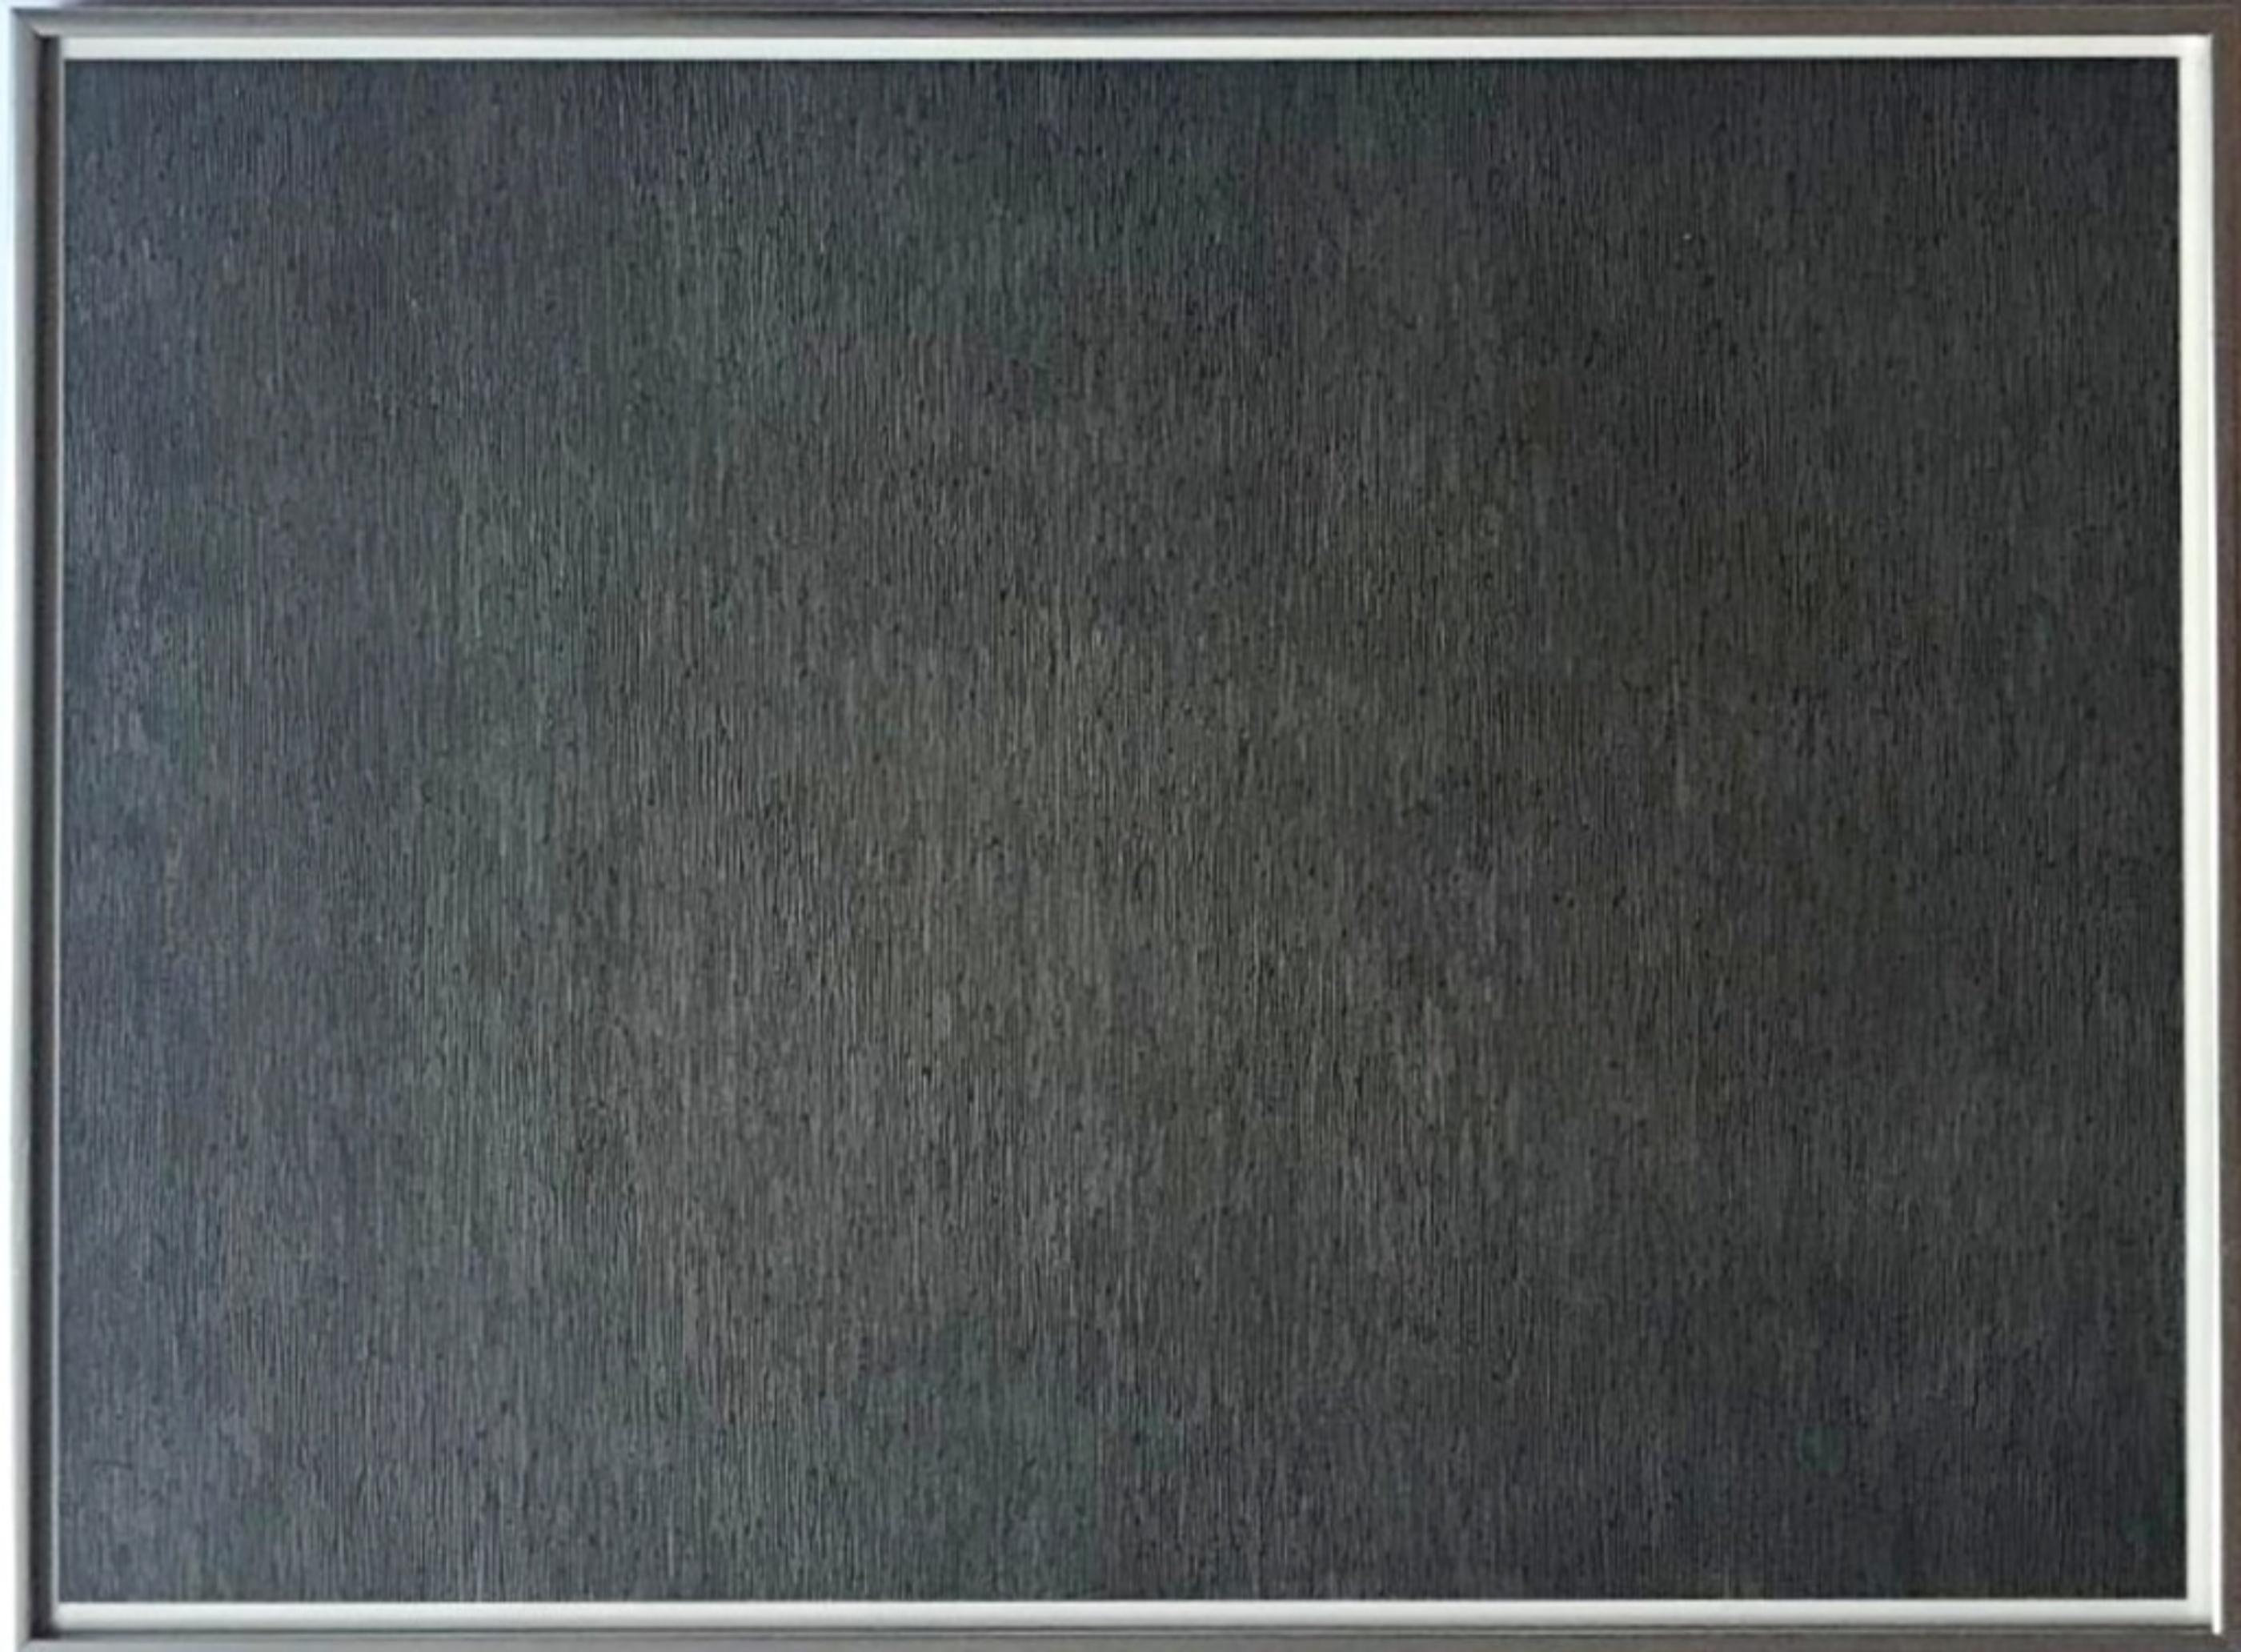 Sol LeWitt Abstract Print – Schwarz mit weißen Linien, vertikal, nicht berührt (Krakow 1970.07; 3. Kornfeld)